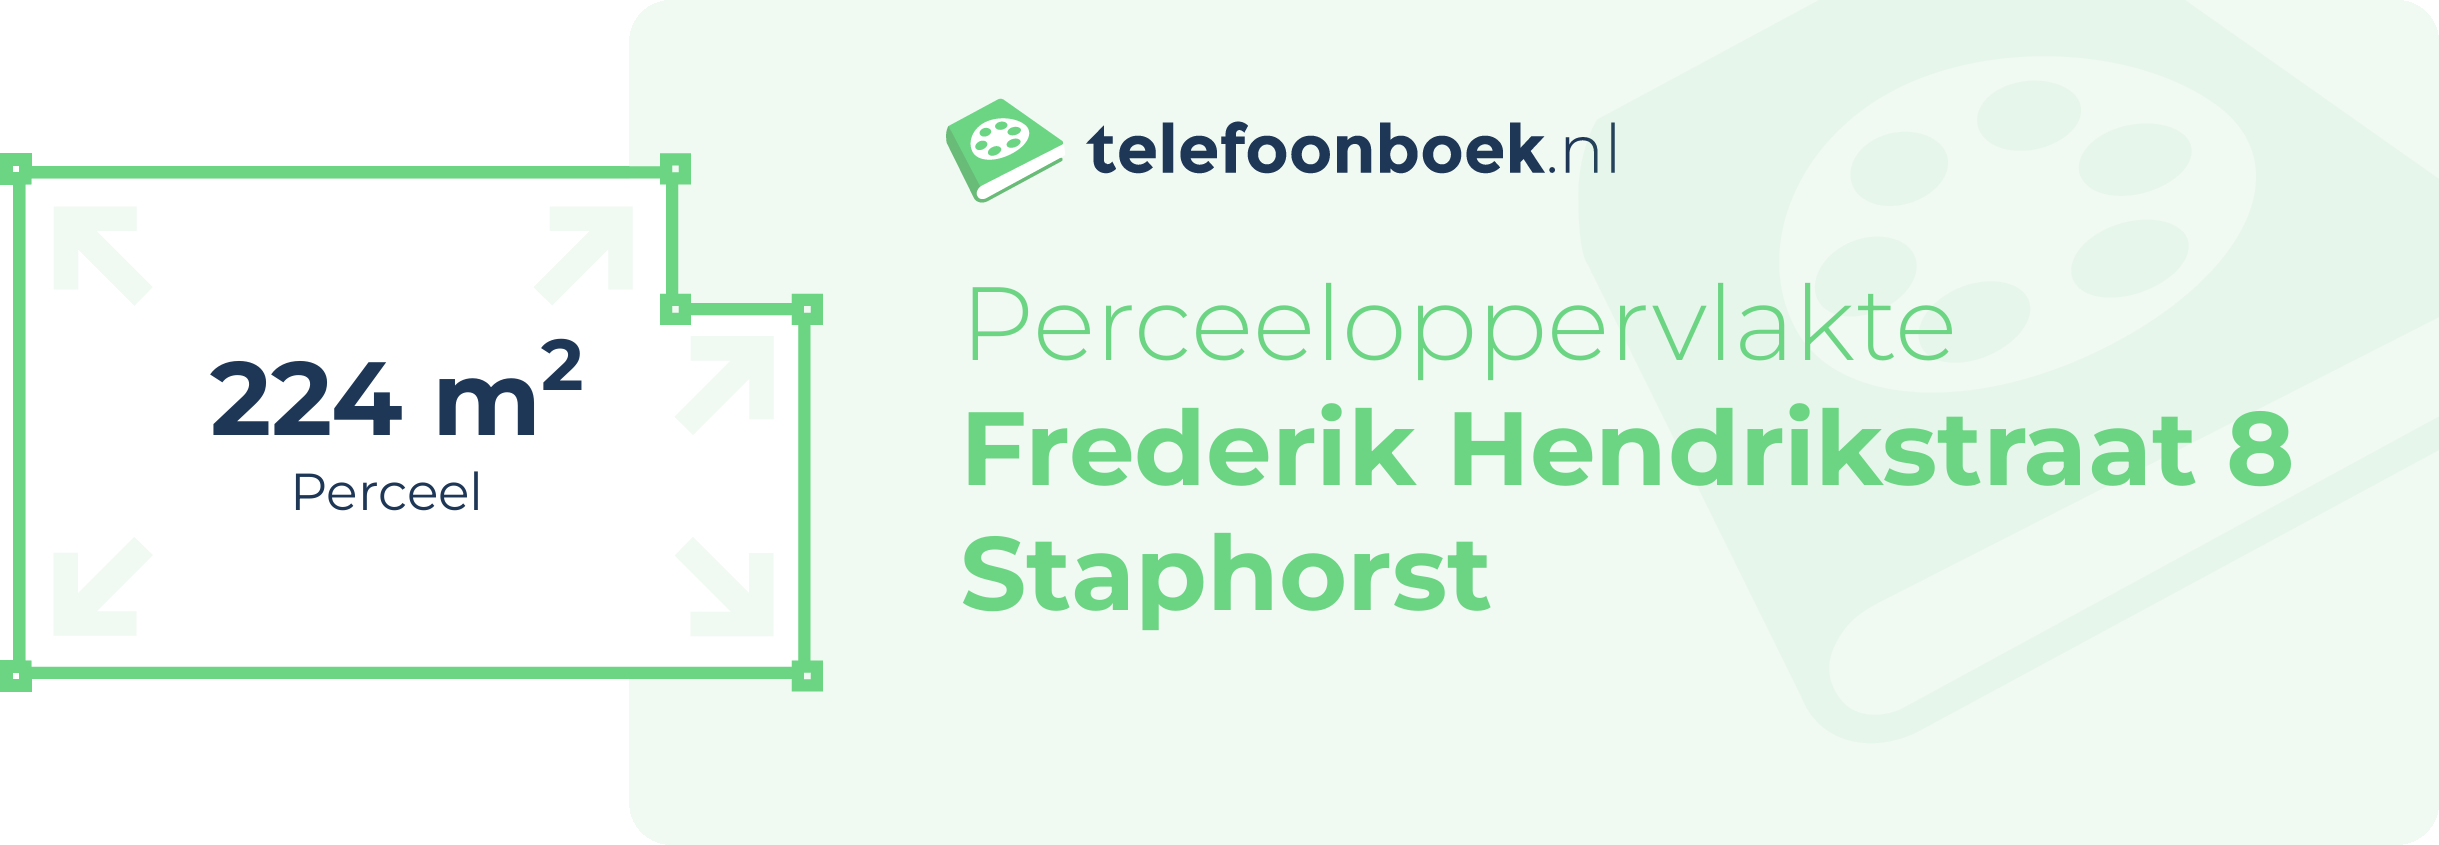 Perceeloppervlakte Frederik Hendrikstraat 8 Staphorst